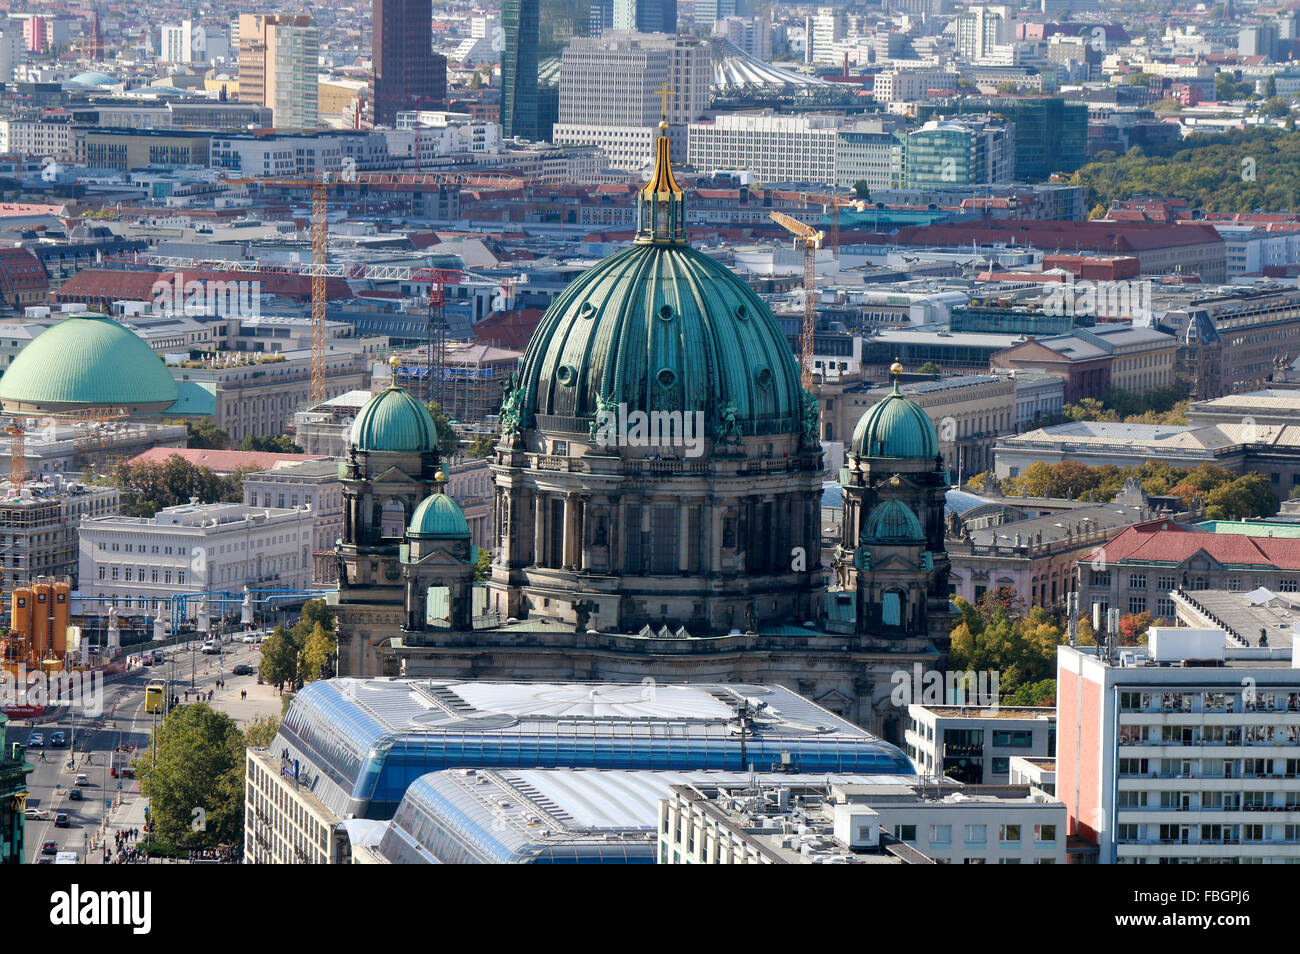 Luftbild: Skyline von Berlin Mitte Mit Dem Berliner Dom, Unter Den Linden, Berlin. Stockfoto